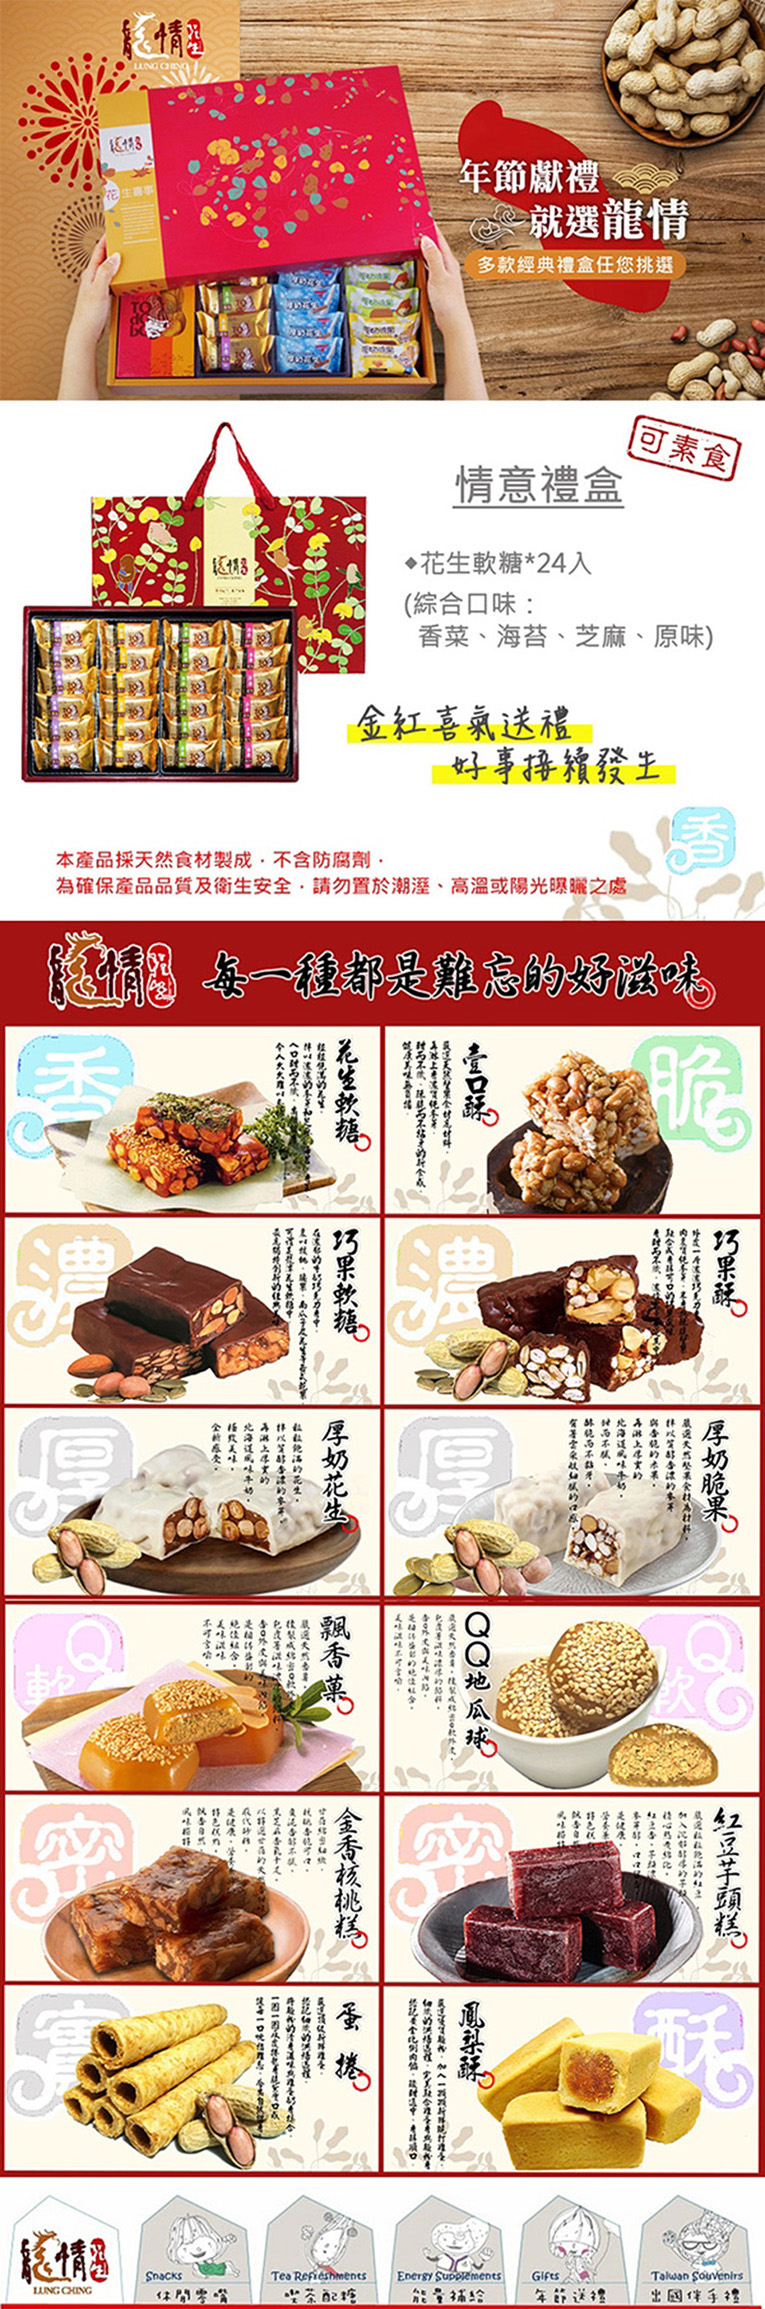 【龍情】情意綜合花生糖禮盒(24入/盒) 年節限定 原味+海苔芝麻+香菜花生糖